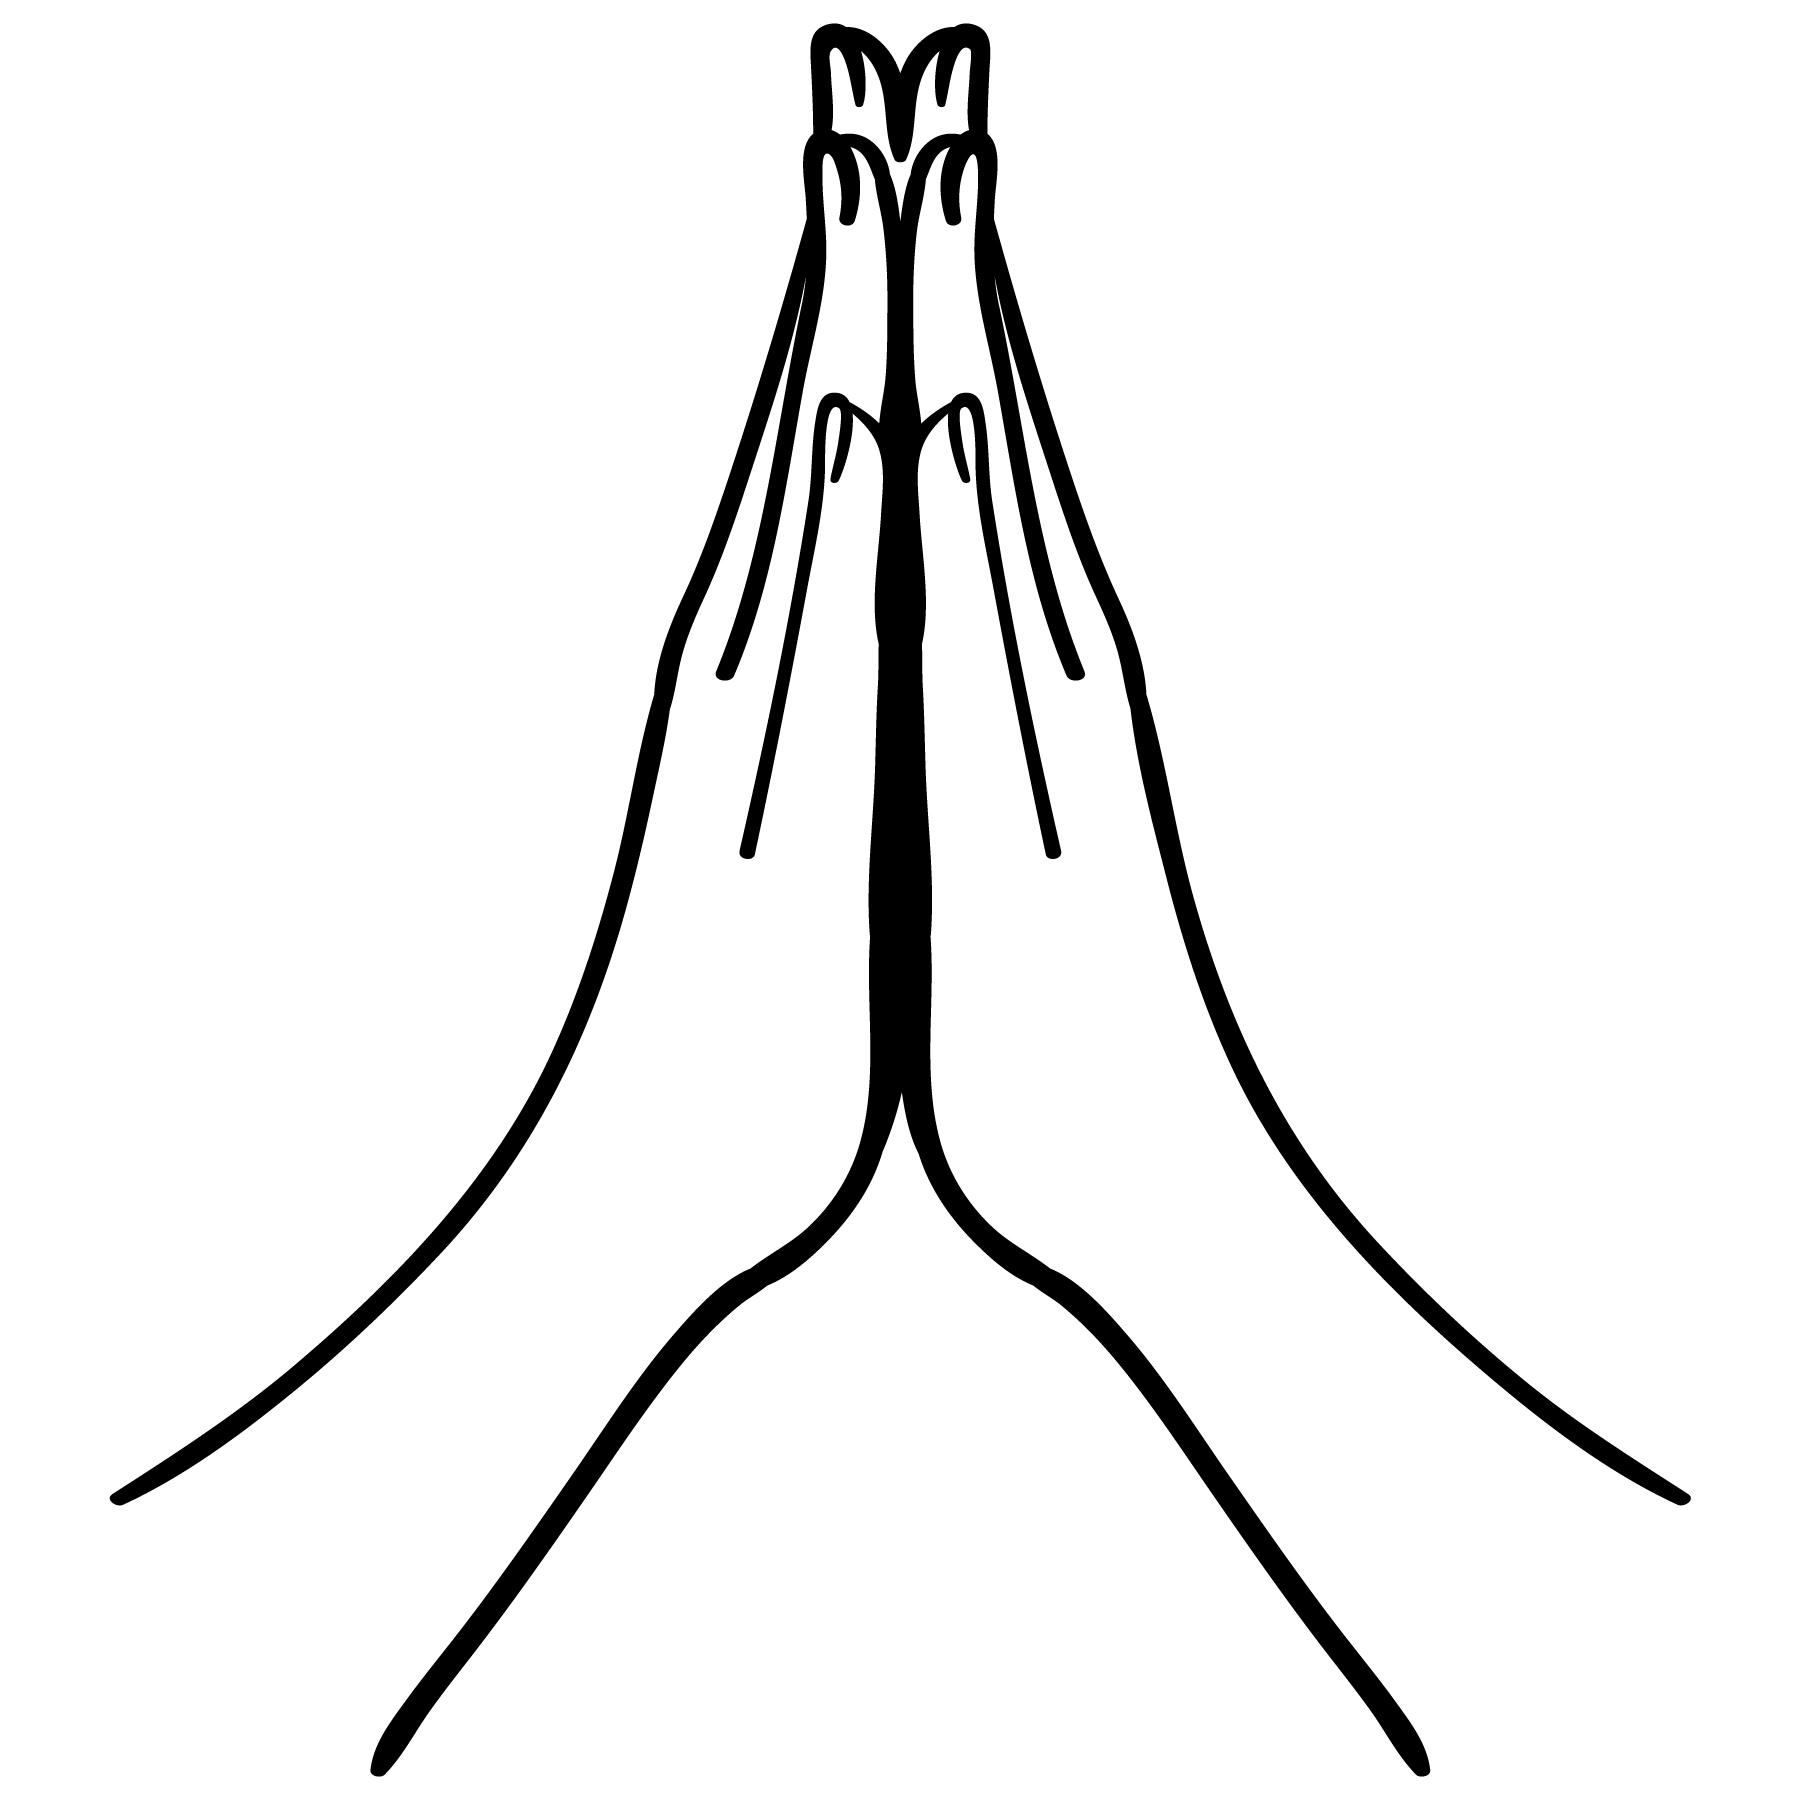 Download praying hands vector - Download Free Vectors, Clipart ...